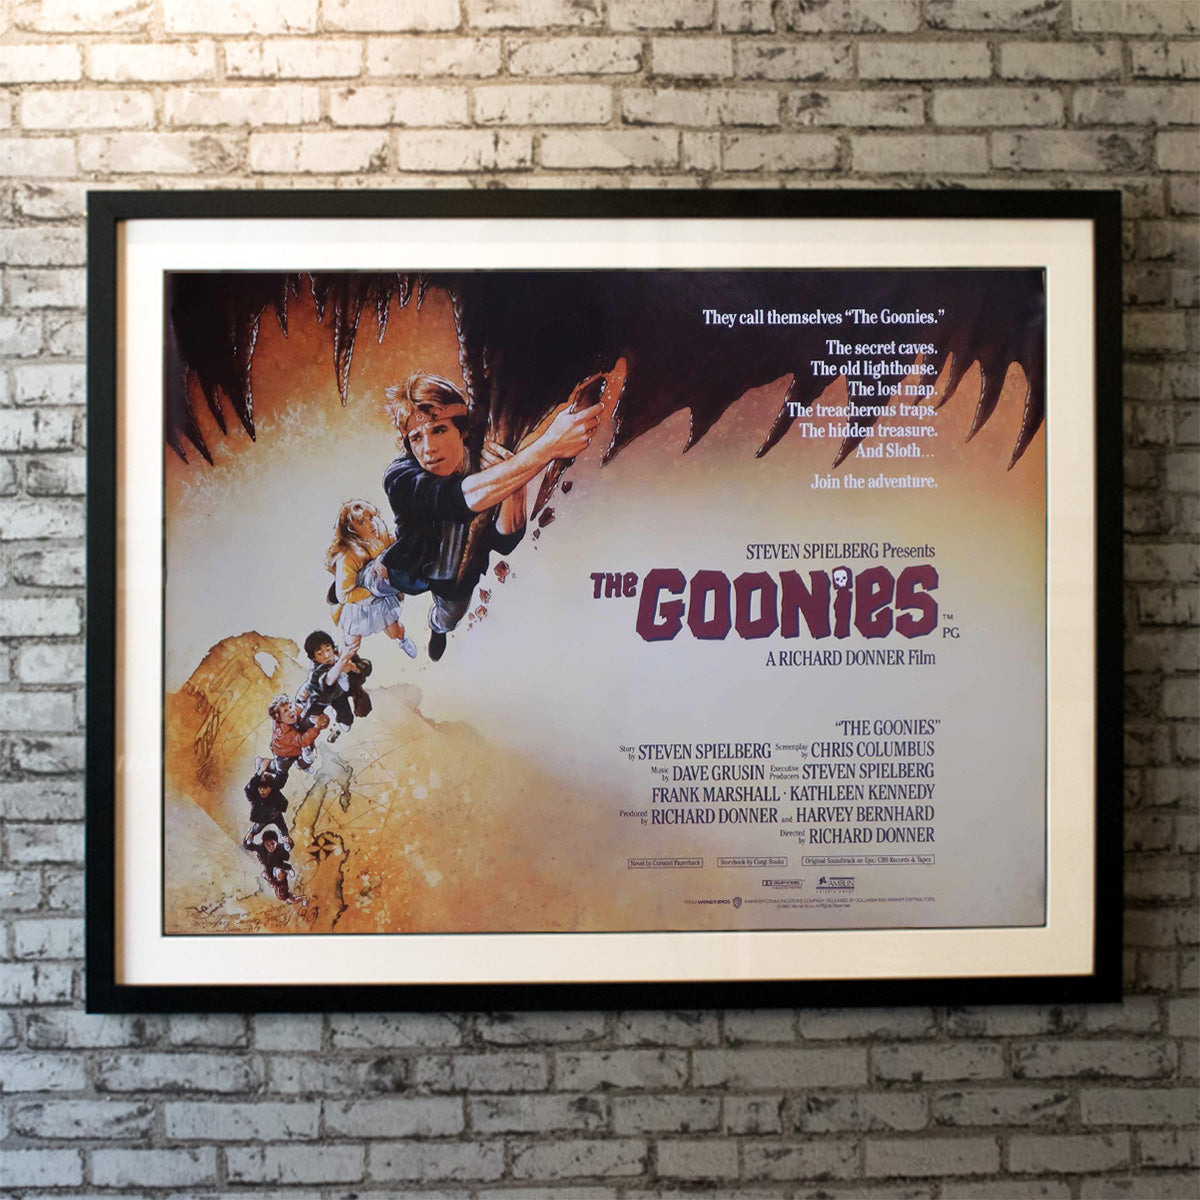 Goonies, The (1985)